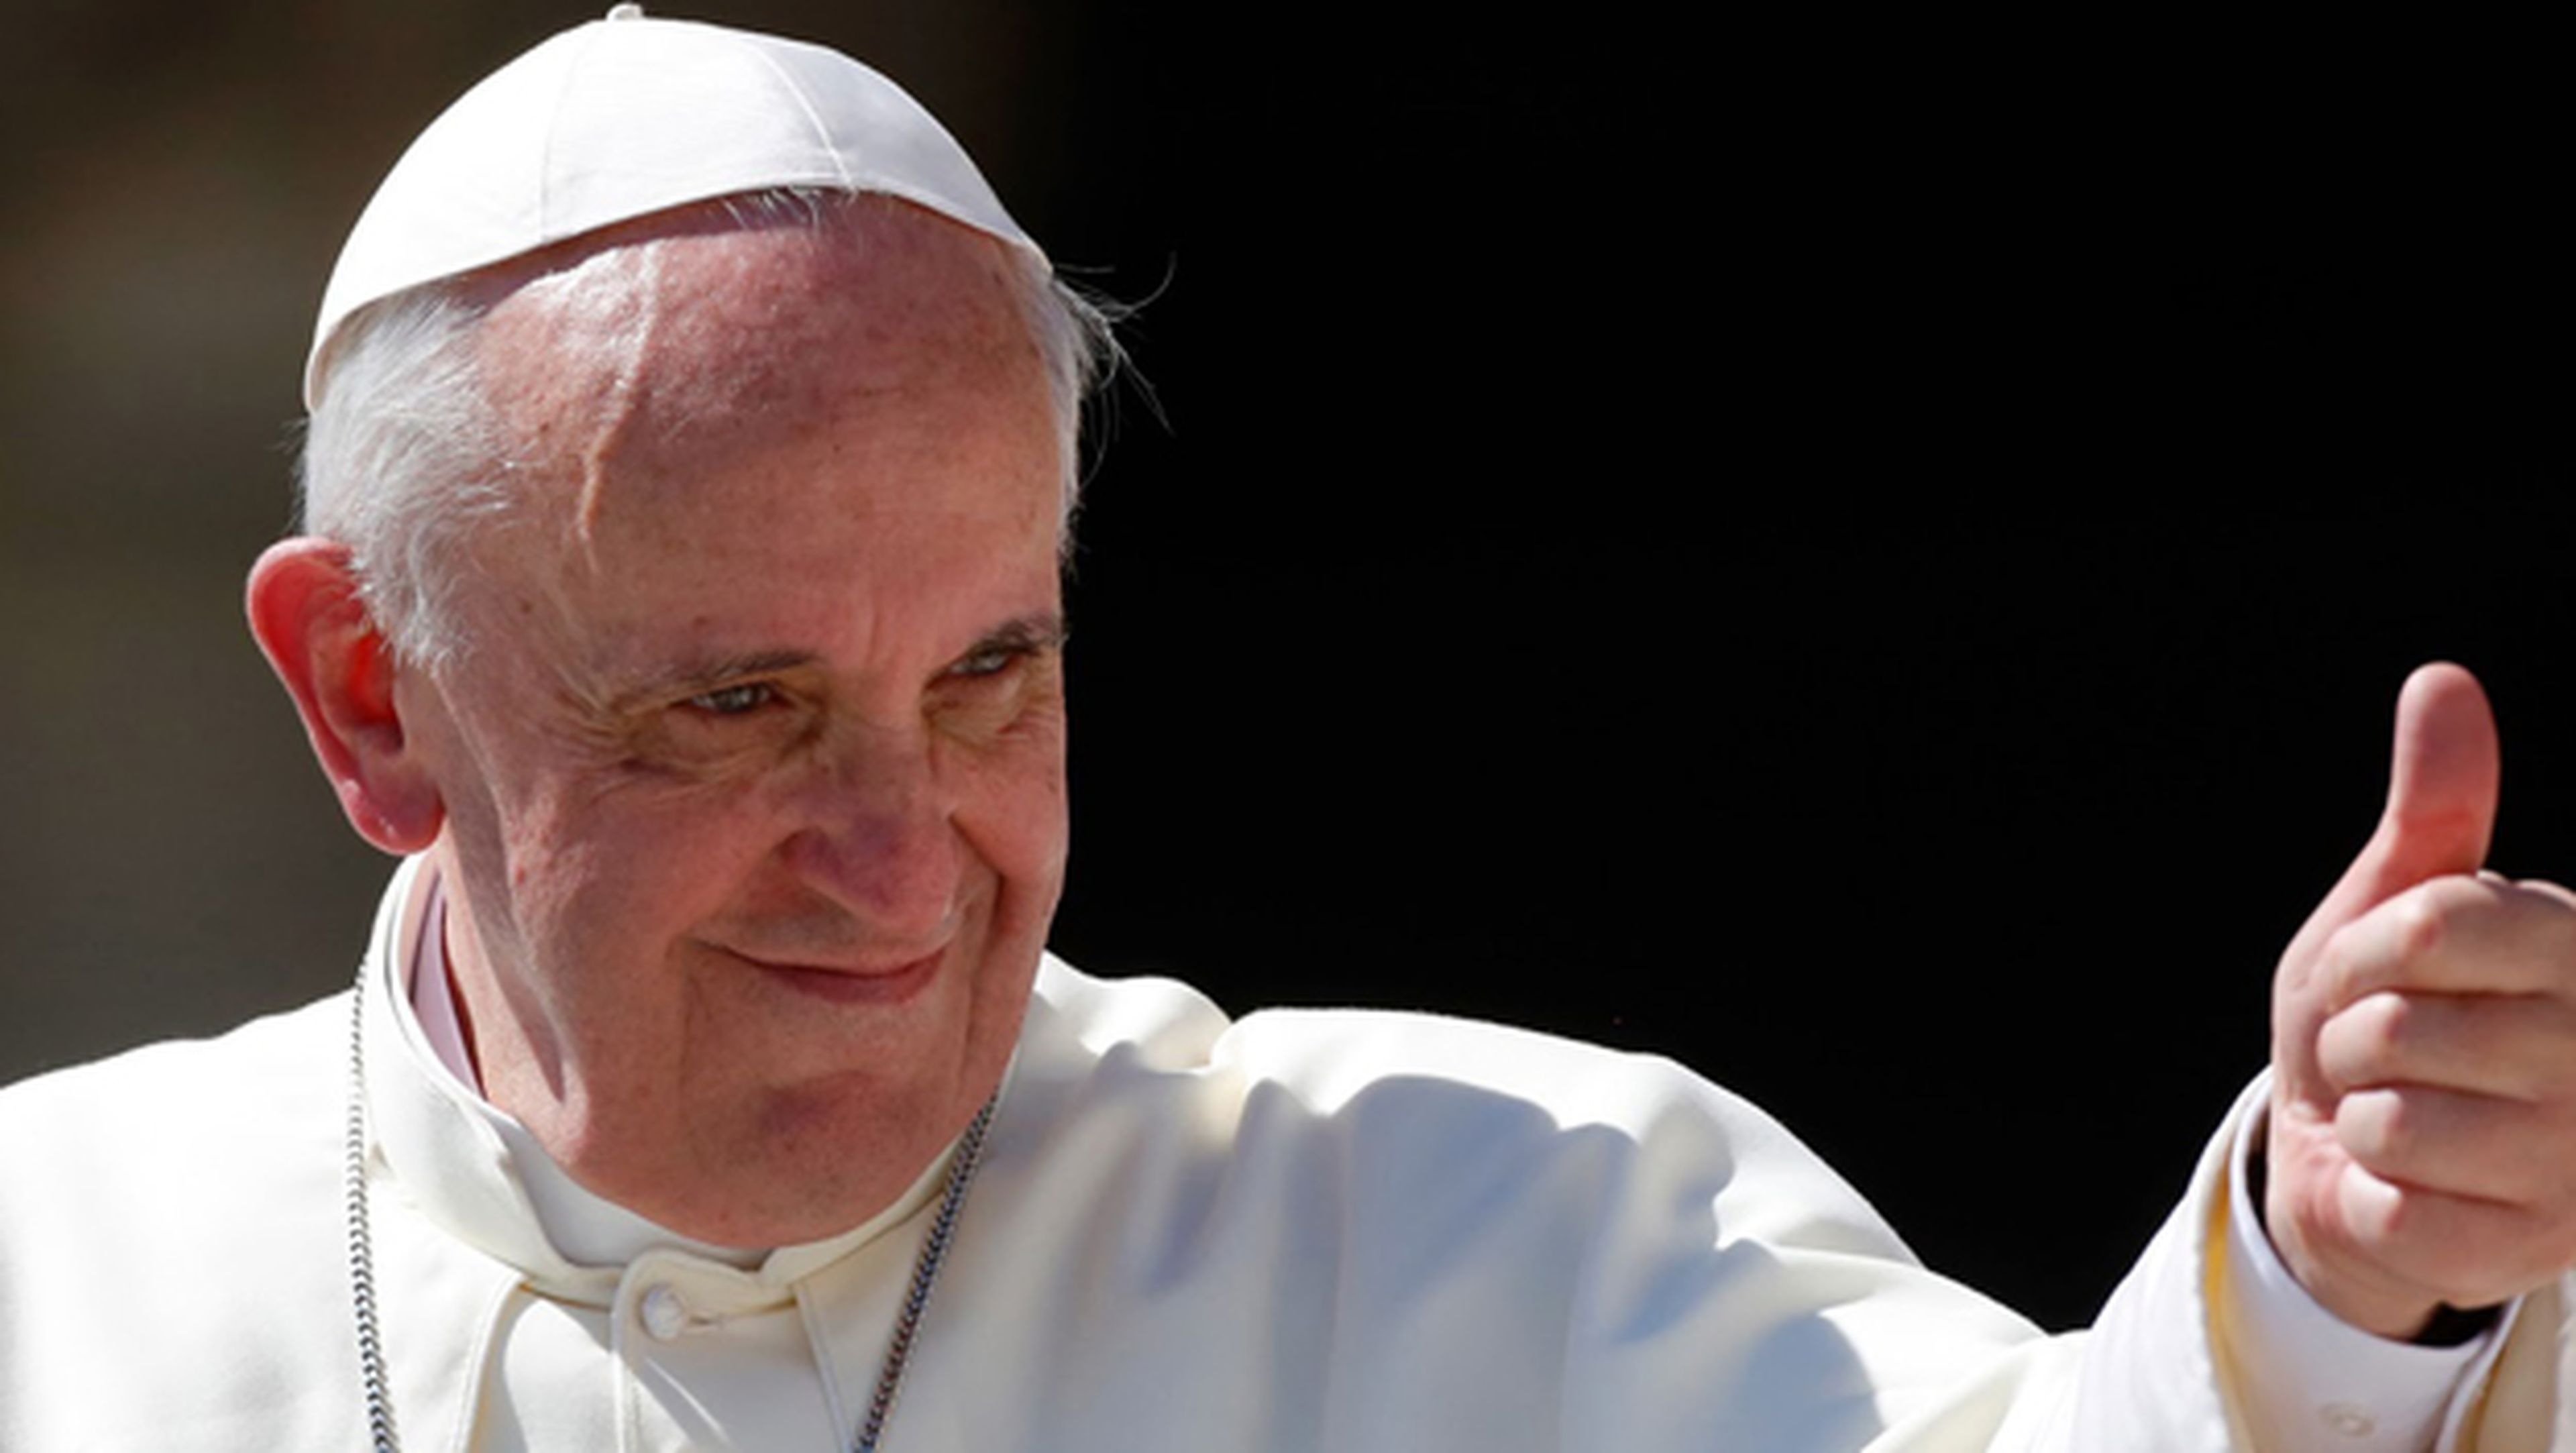 El Papa Francisco suma más de un millón de seguidores en Instagram en 12 horas. Le quita el récord a David Beckham